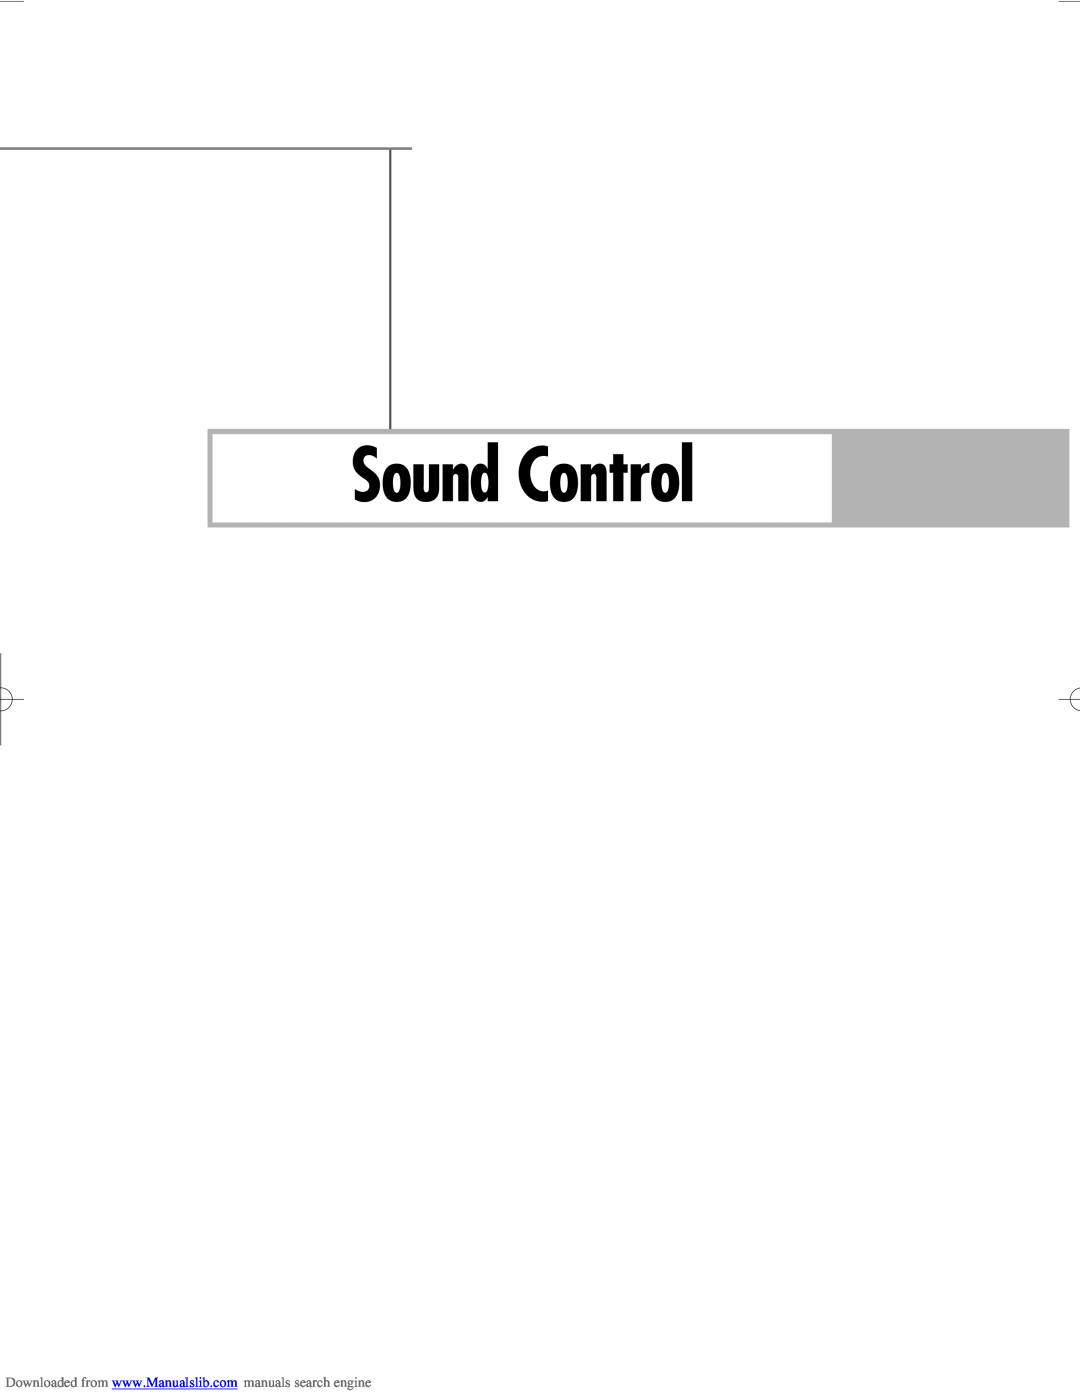 Samsung HL-R5656W, HL-R6156W, HL-R5056W manual Sound Control 